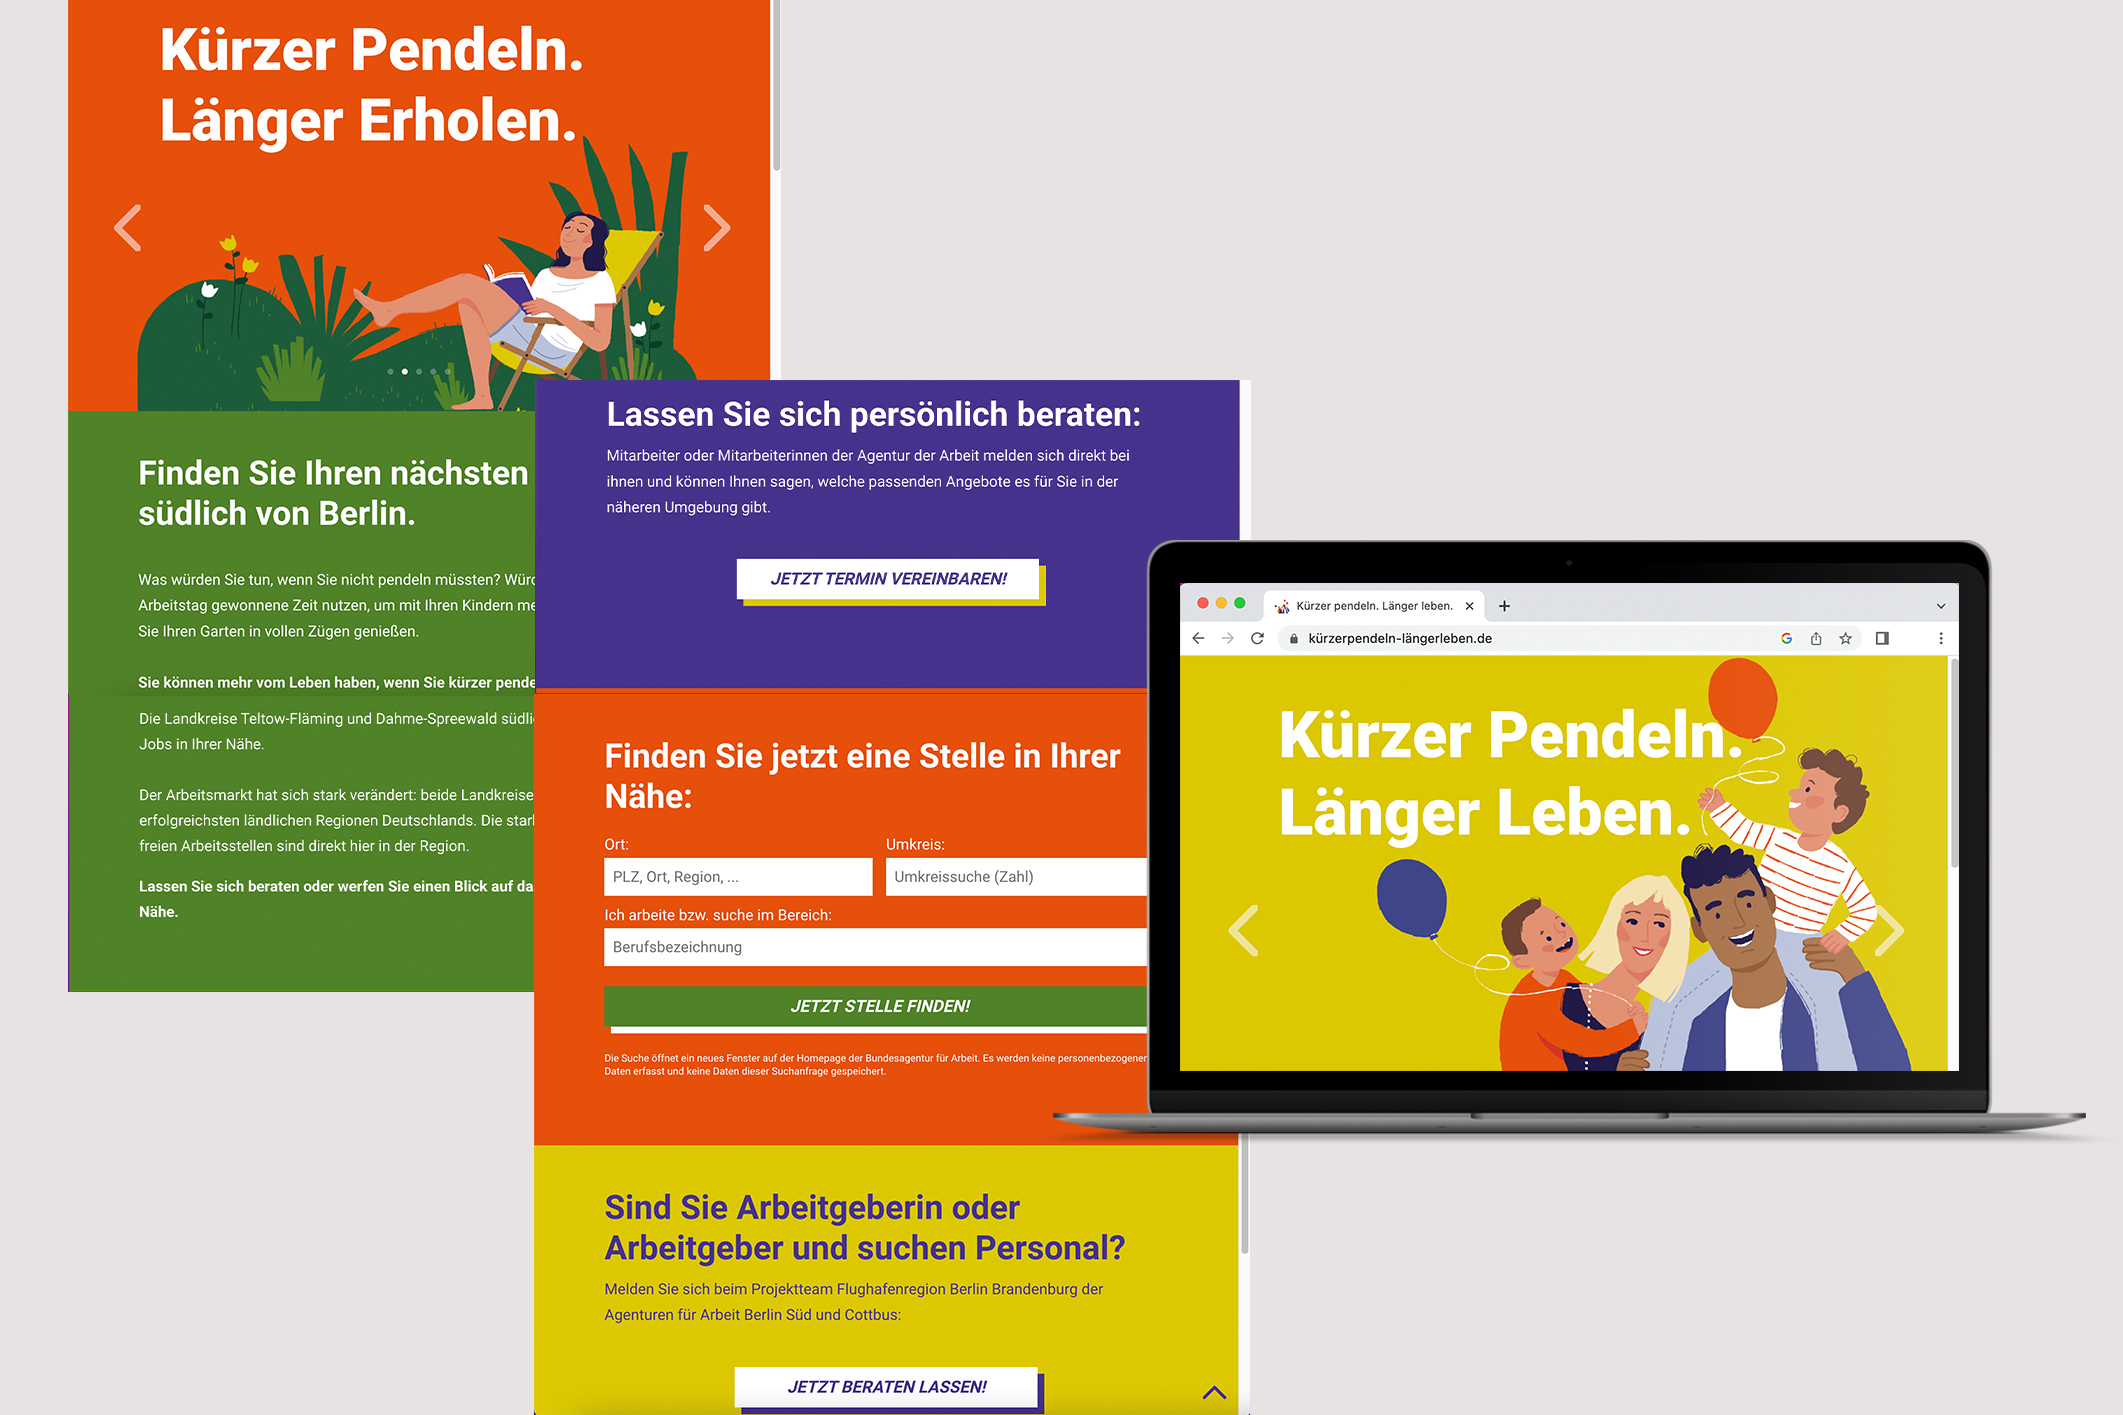 Embassy_Pendlerkampagne_Kuerzer-Pendeln_Laenger-Leben_Website_32